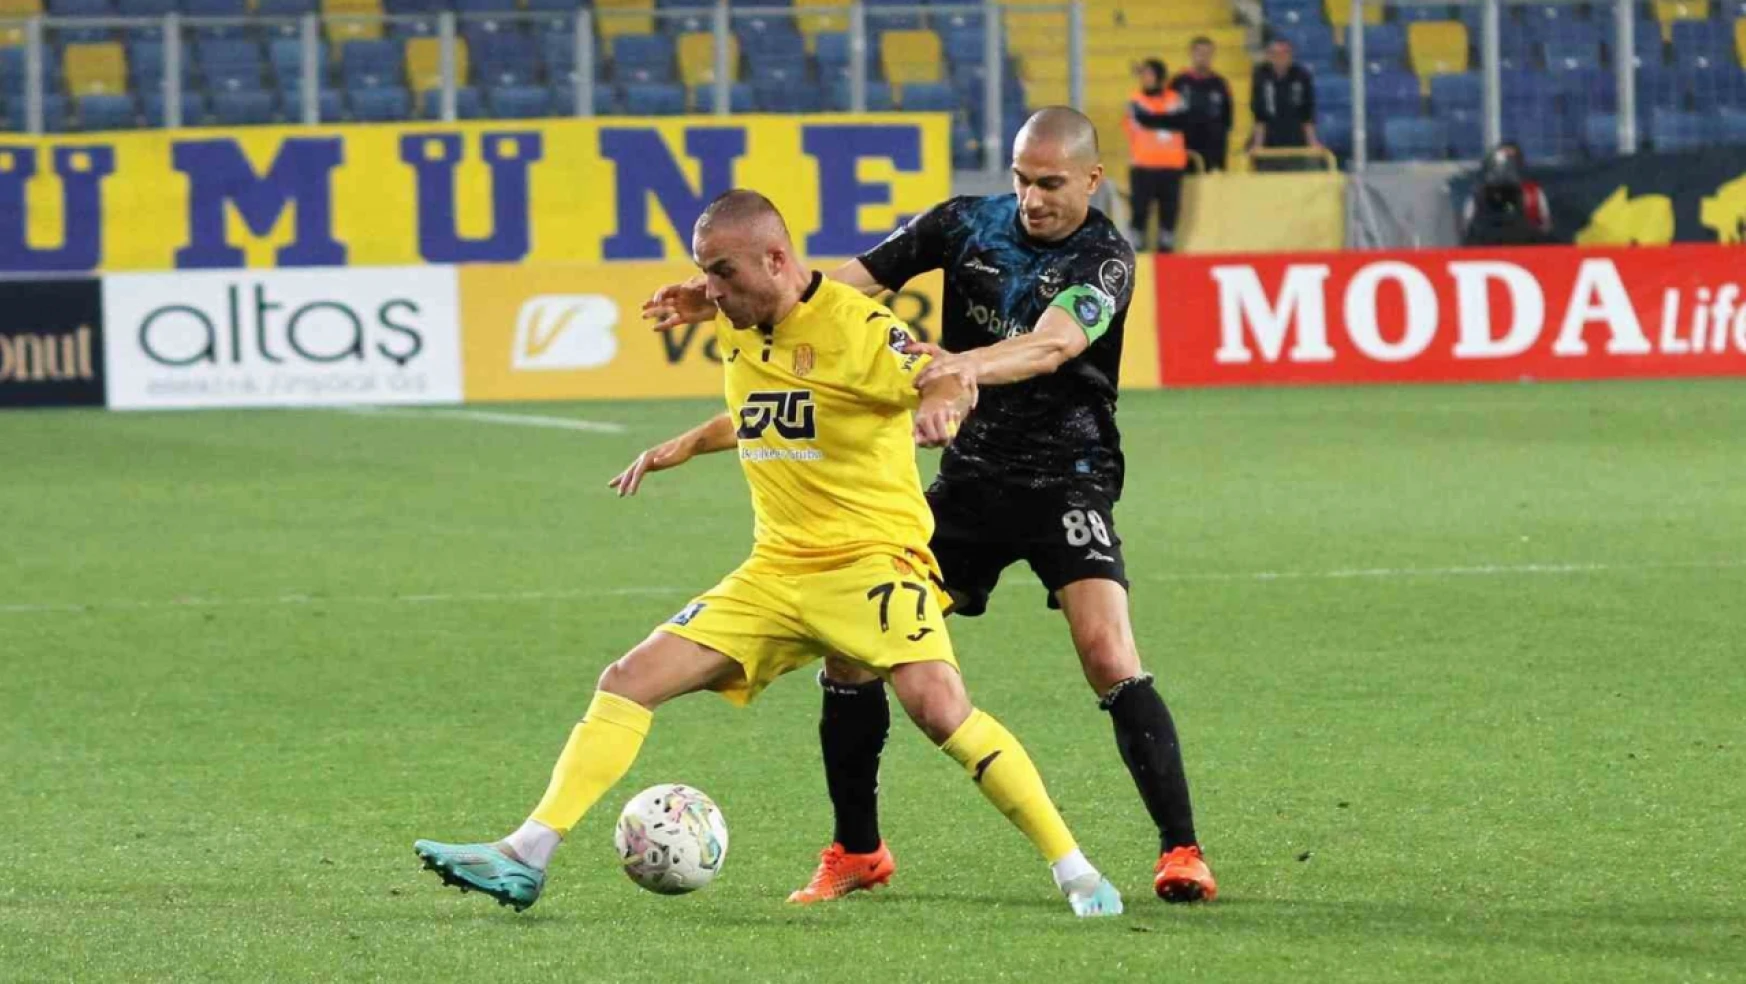 Spor Toto Süper Lig: MKE Ankaragücü: 1 - Adana Demirspor: 2 (Maç sonucu)